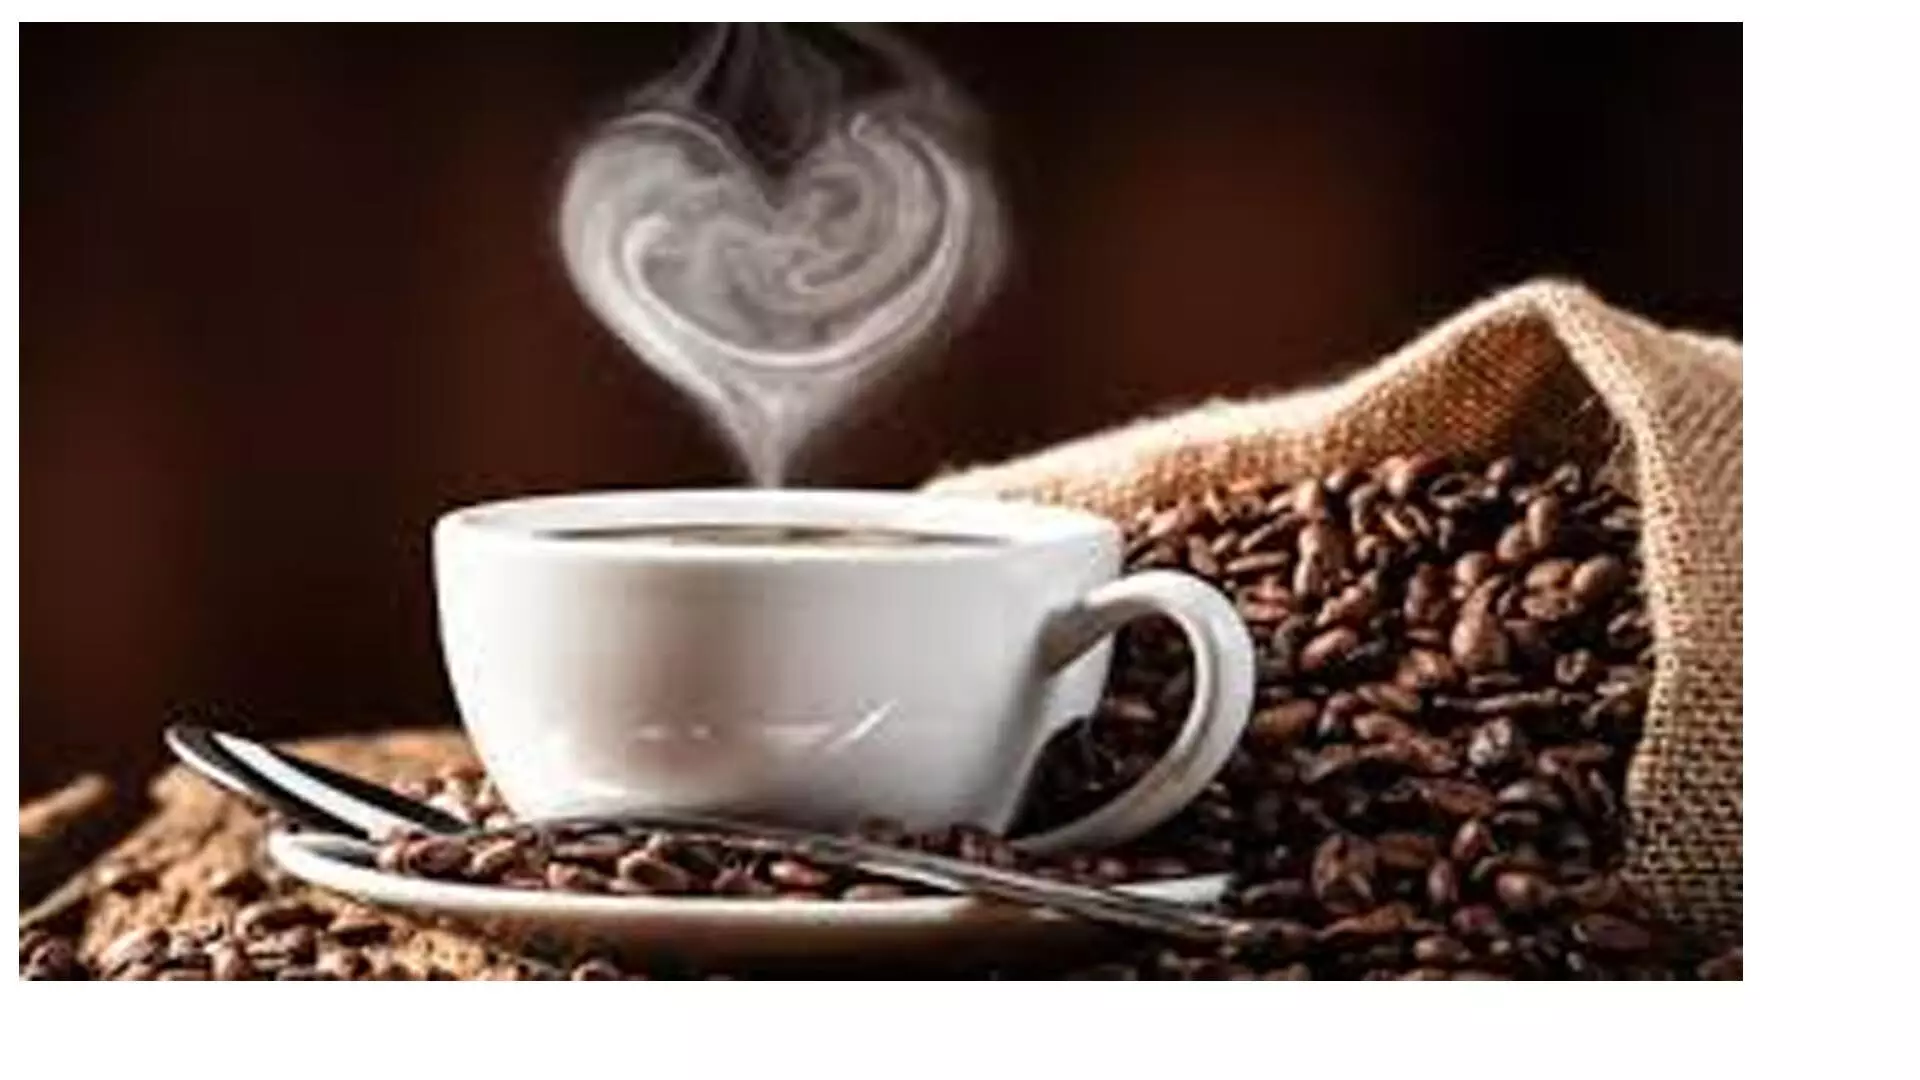 रात में कॉफी पीने के फायदे: मूड अच्छा करना, वजन नियंत्रित करना, अवसाद का खतरा कम करना और भी बहुत कुछ।